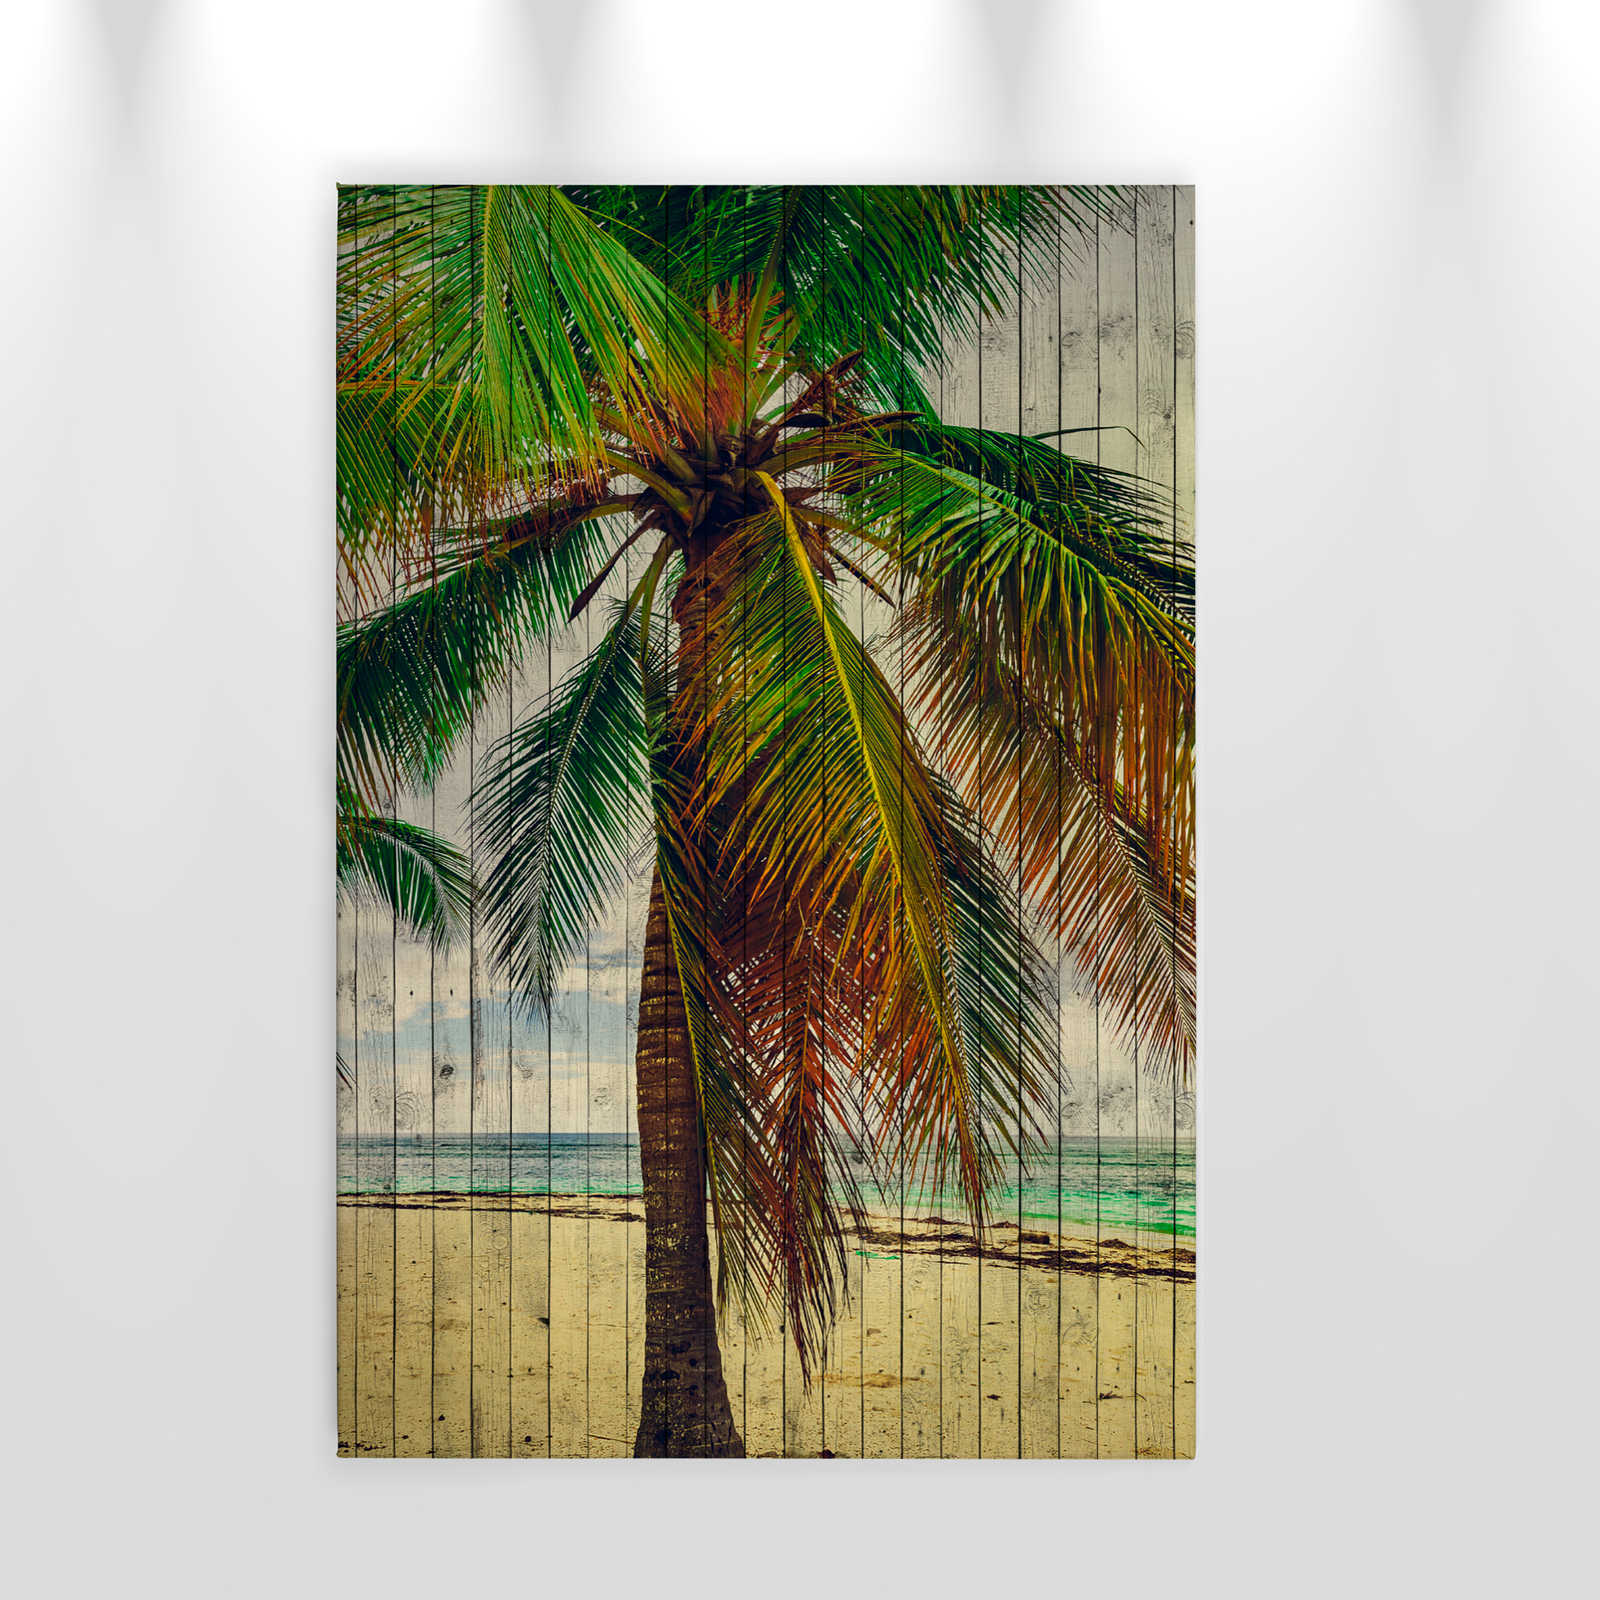             Tahiti 3 - Quadro su tela con palme e sensazione di vacanza - Natura qualita consistenza in legno - 0,60 m x 0,90 m
        